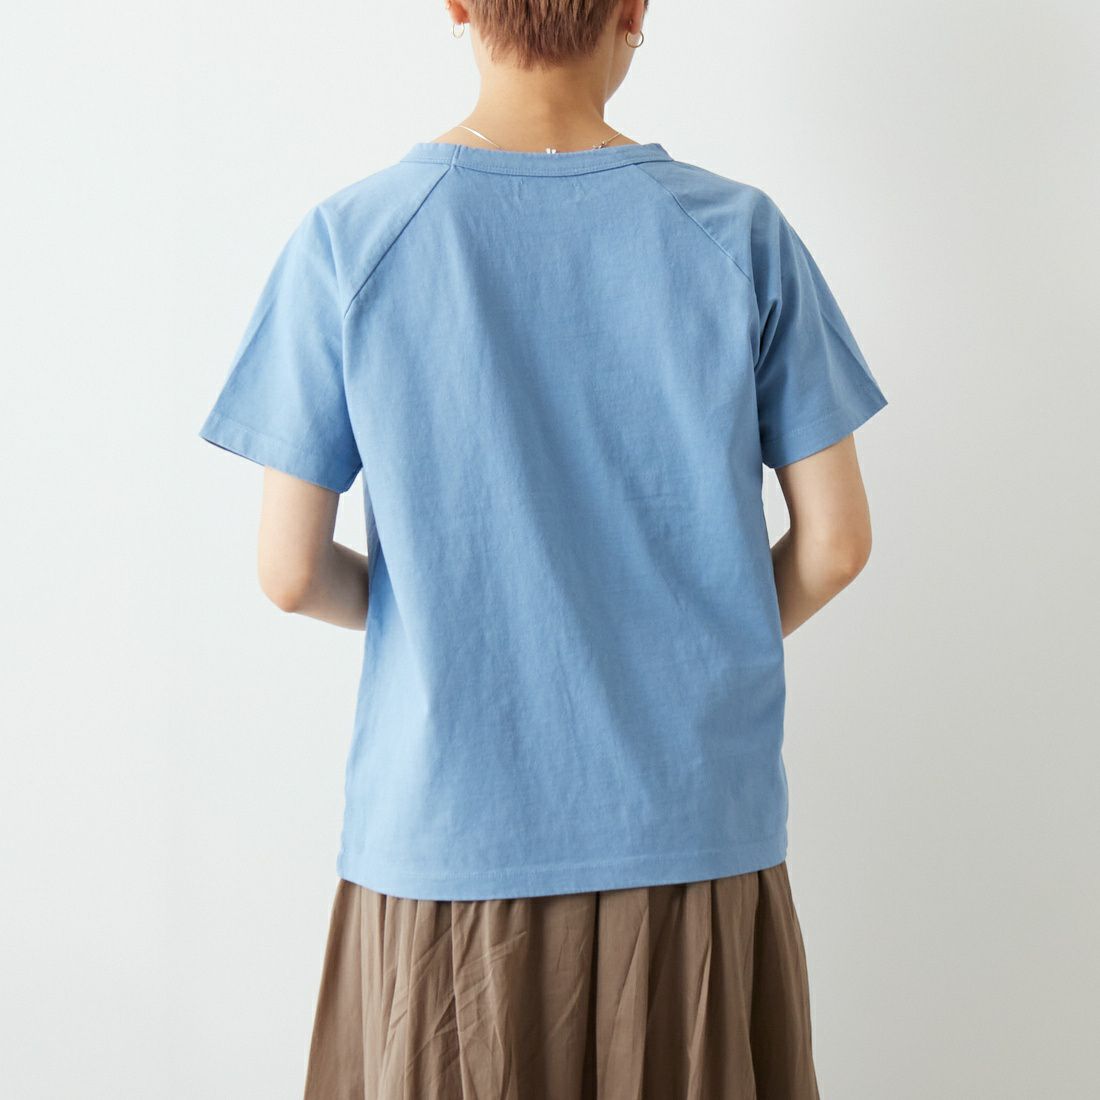 Jf Ready Made [ジェイエフレディメイド] USコットンラグランTシャツ [JFS-2113] 42 S.BLUE &&モデル身長：160cm 着用サイズ：1&&